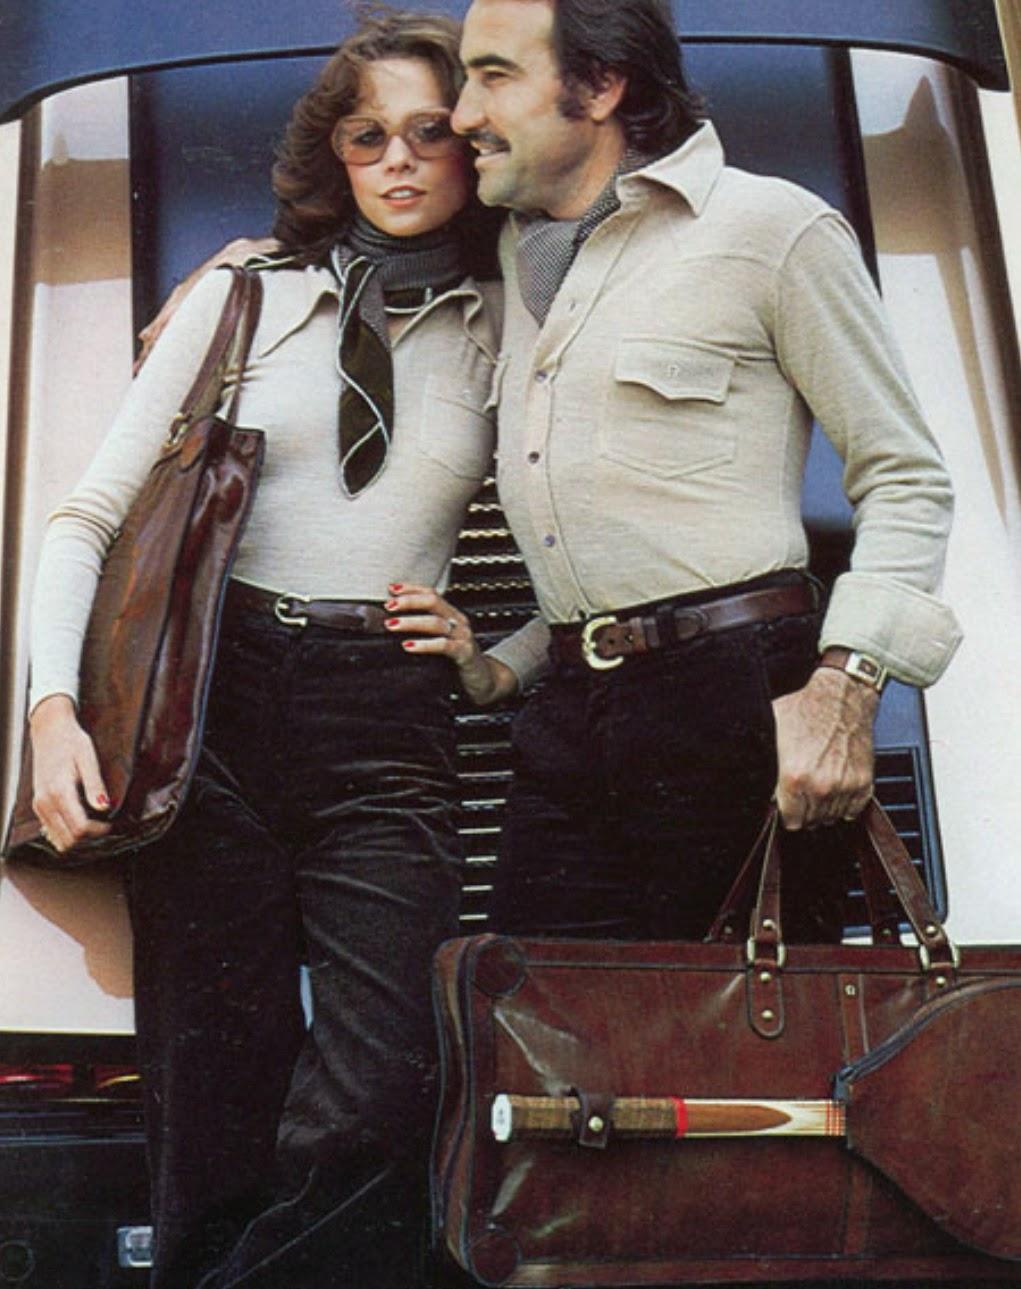 Clay Regazzoni with a girl.